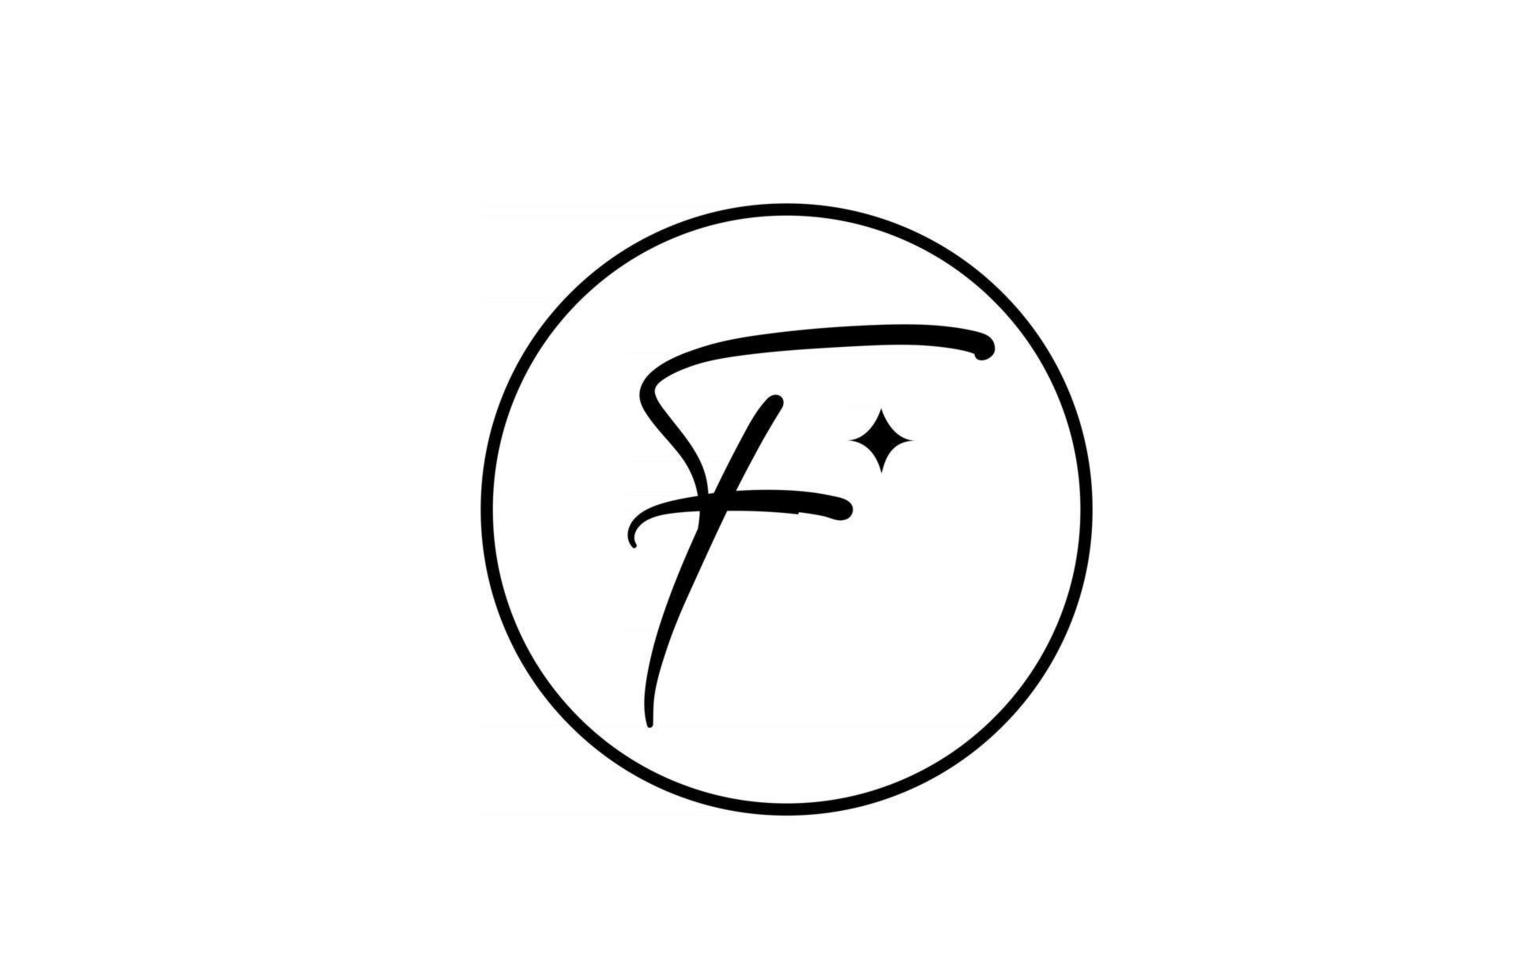 logo della lettera dell'alfabeto f per affari con stella e cerchio. lettere semplici ed eleganti per l'azienda. design dell'icona del marchio di identità aziendale in bianco e nero vettore